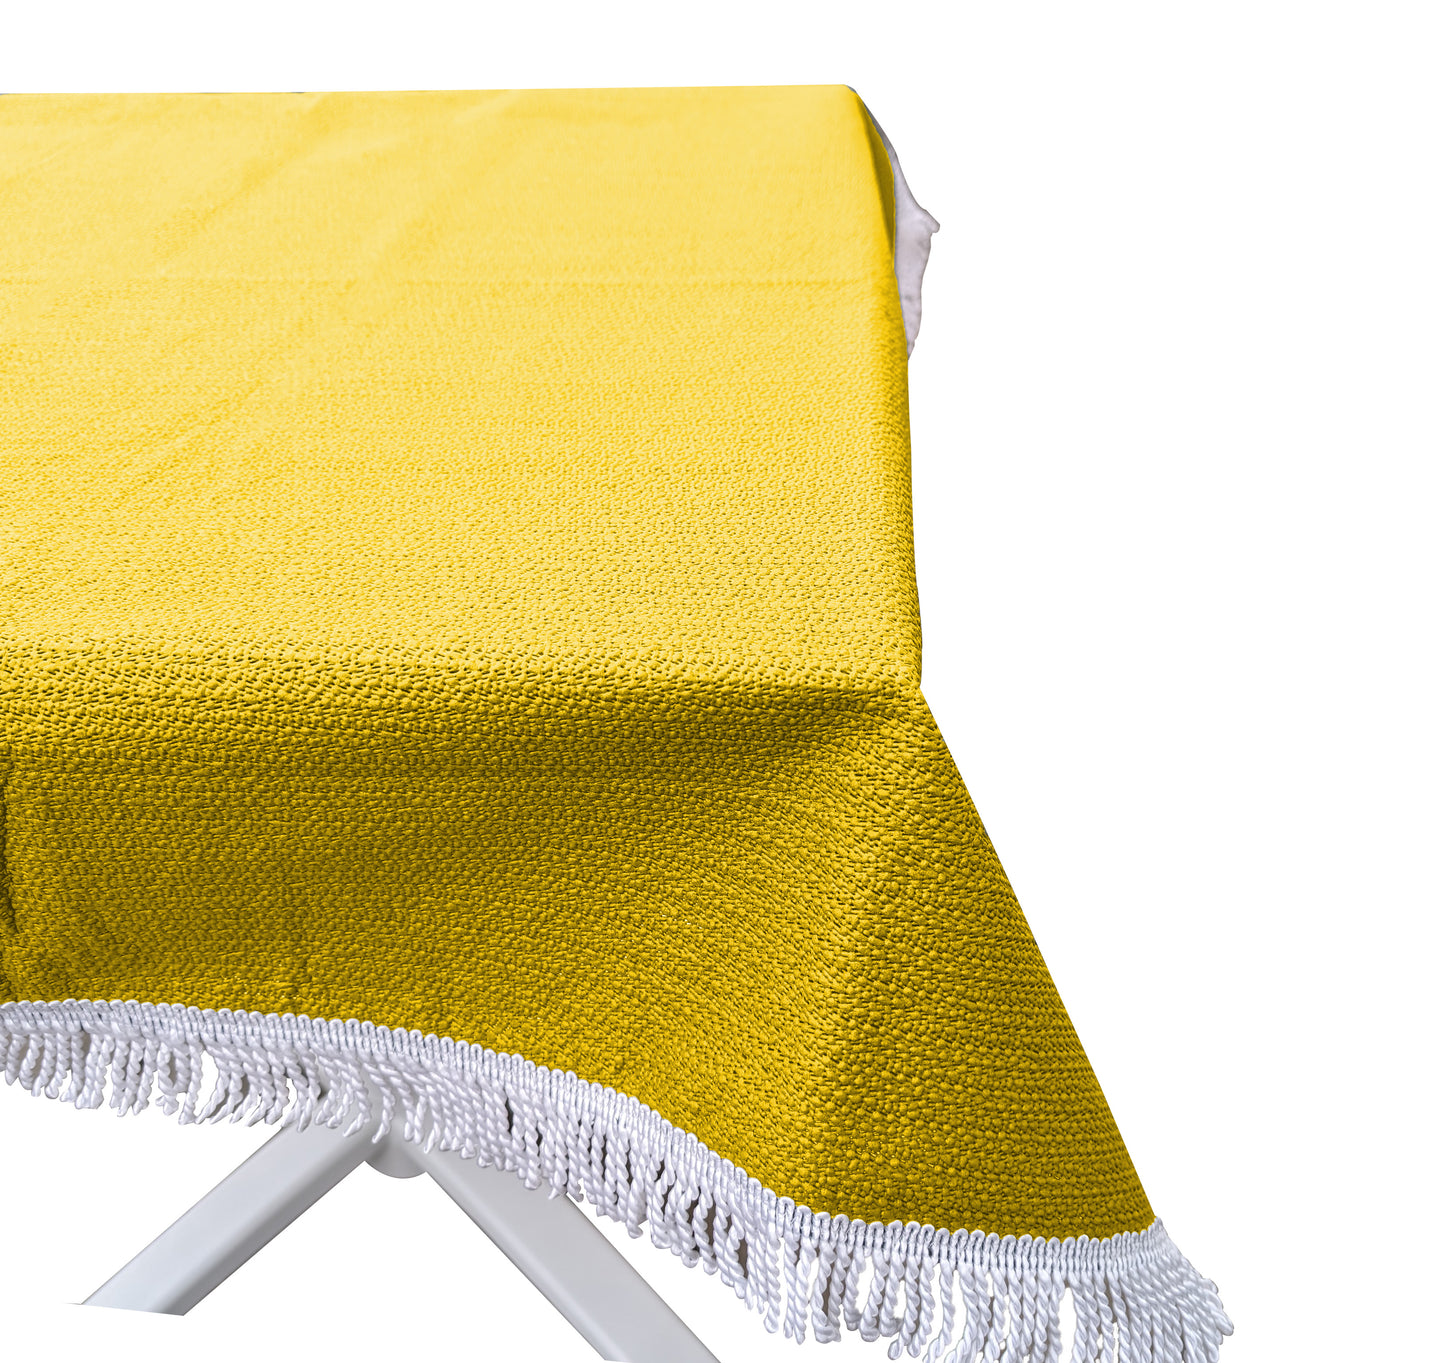 Gartentischdecke 160x250cm oval  Gelb Weichschaum Witterungsbeständig  Wetterfest geschäumt  Pflegeleicht  abwaschbar